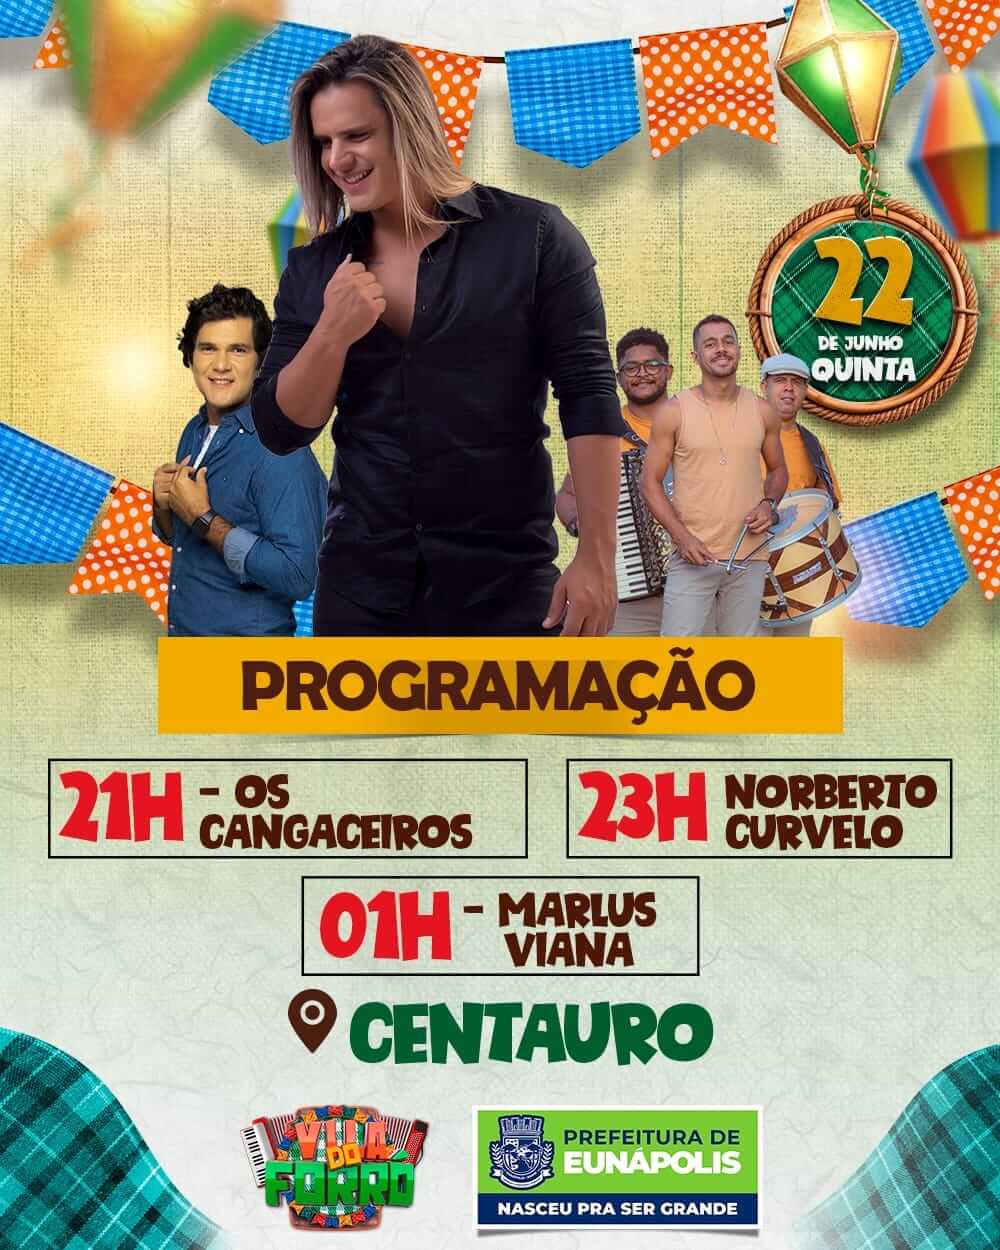 Vila do Forró 2023 estreia no bairro Pequi com cantor Marlus Viana nesta quinta-feira 7